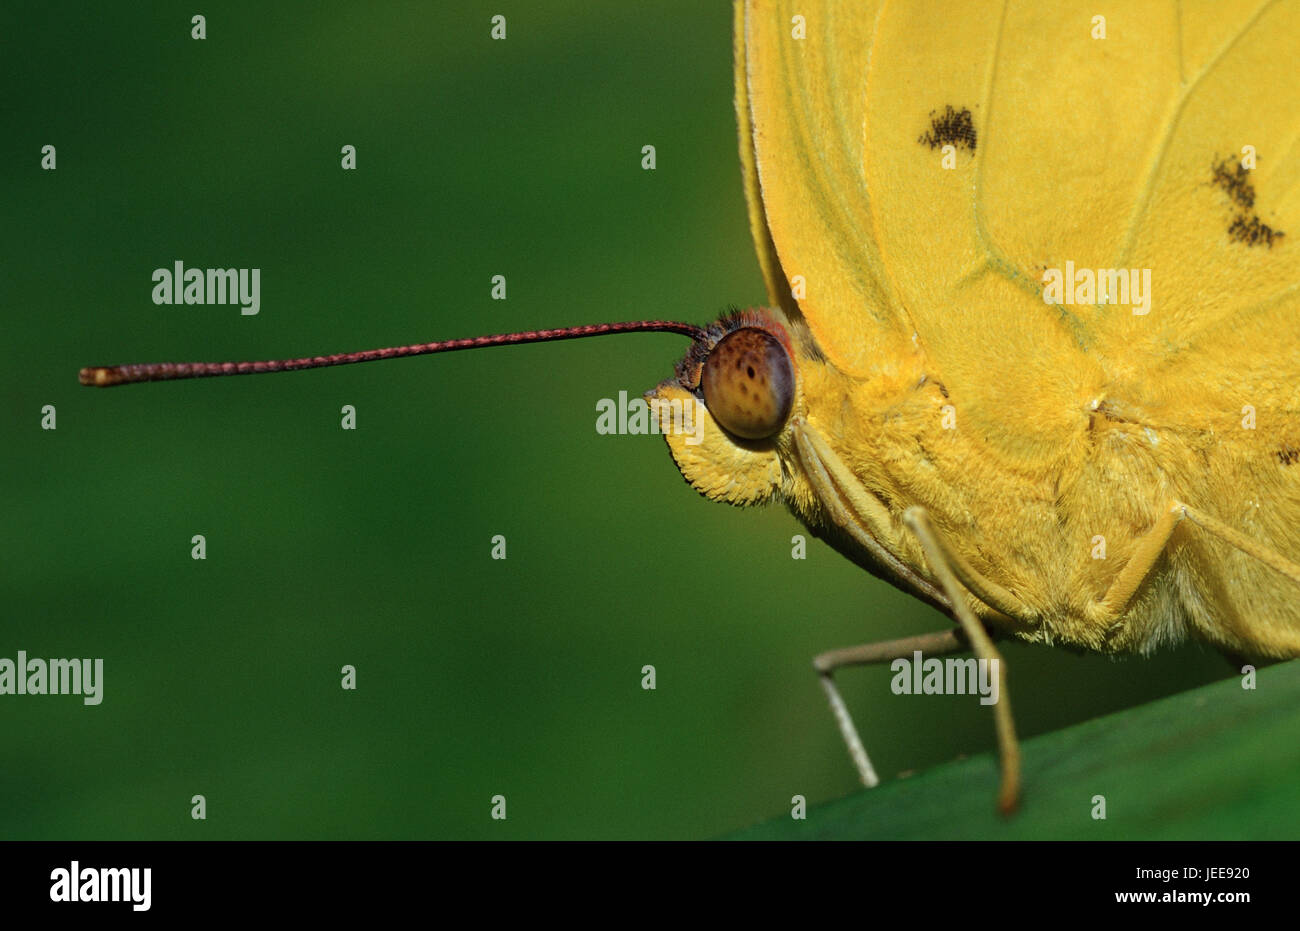 Orangegebänderter sulphur butterfly, Phoebis philea, Stock Photo